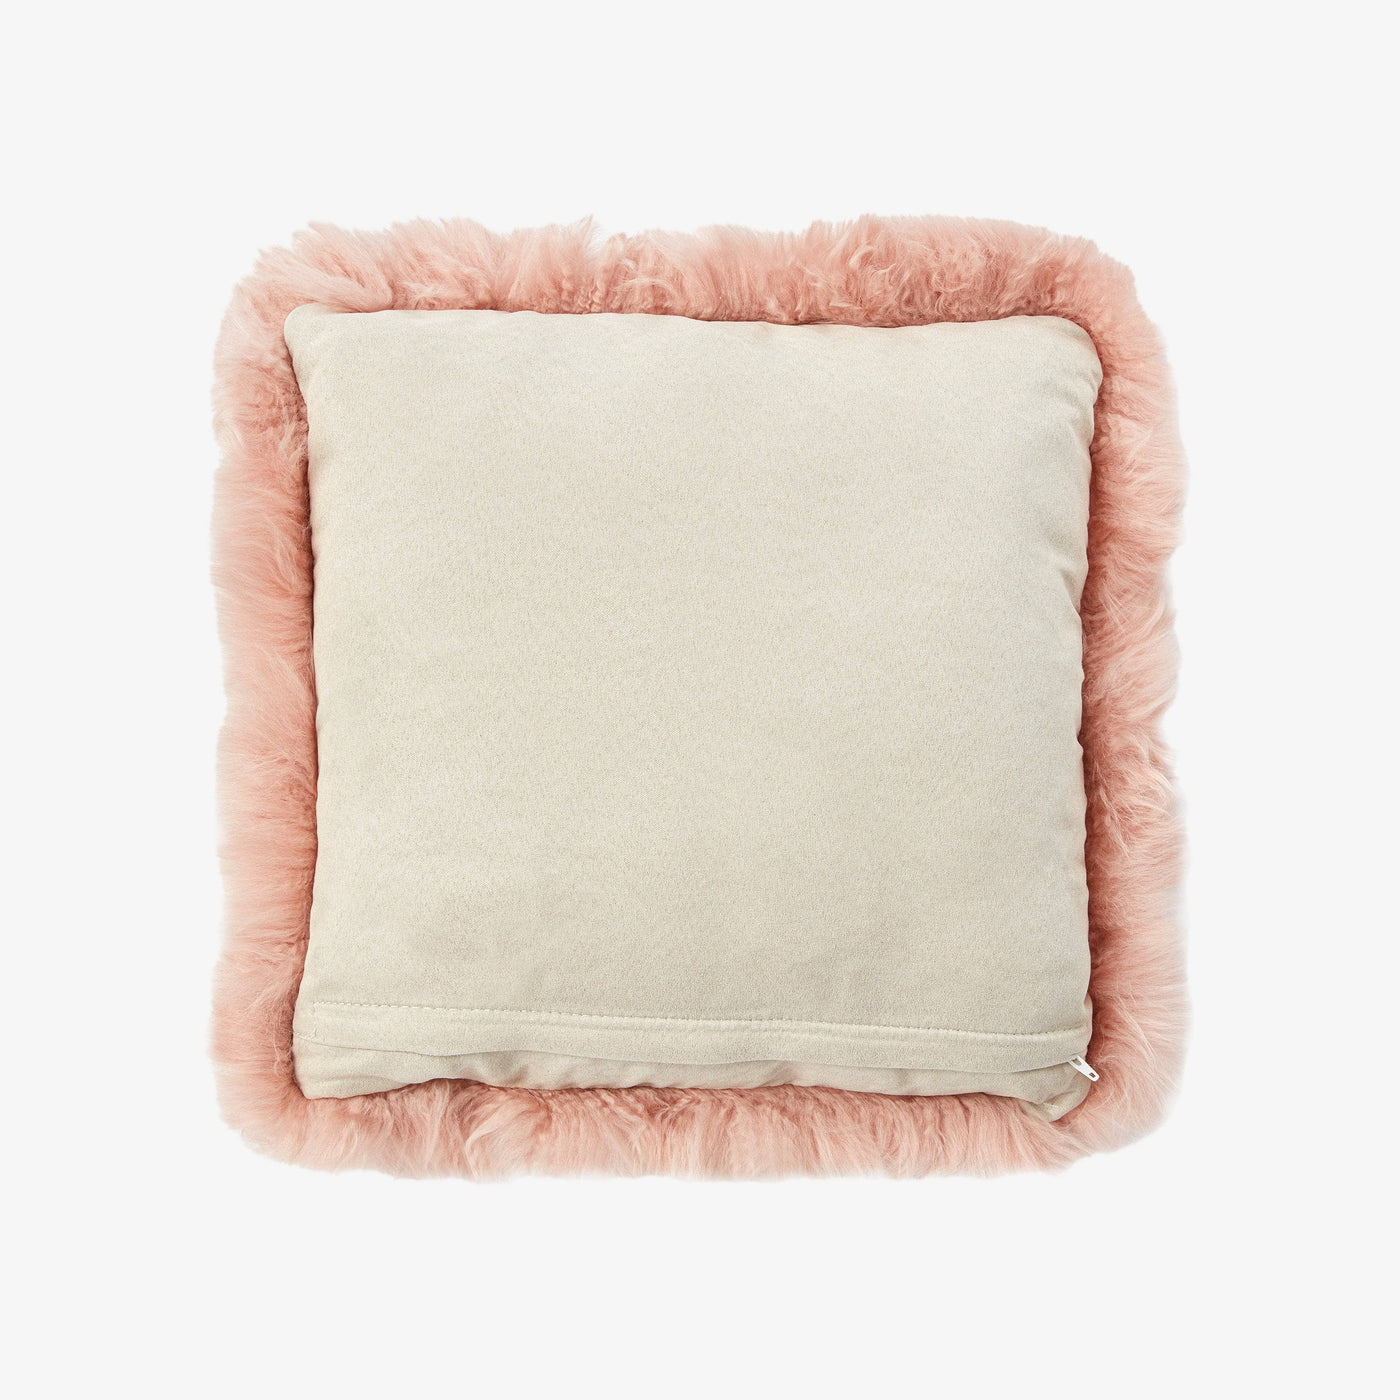 Follois Sheepskin Cushion, Rose, 40x40 cm Cushions sazy.com